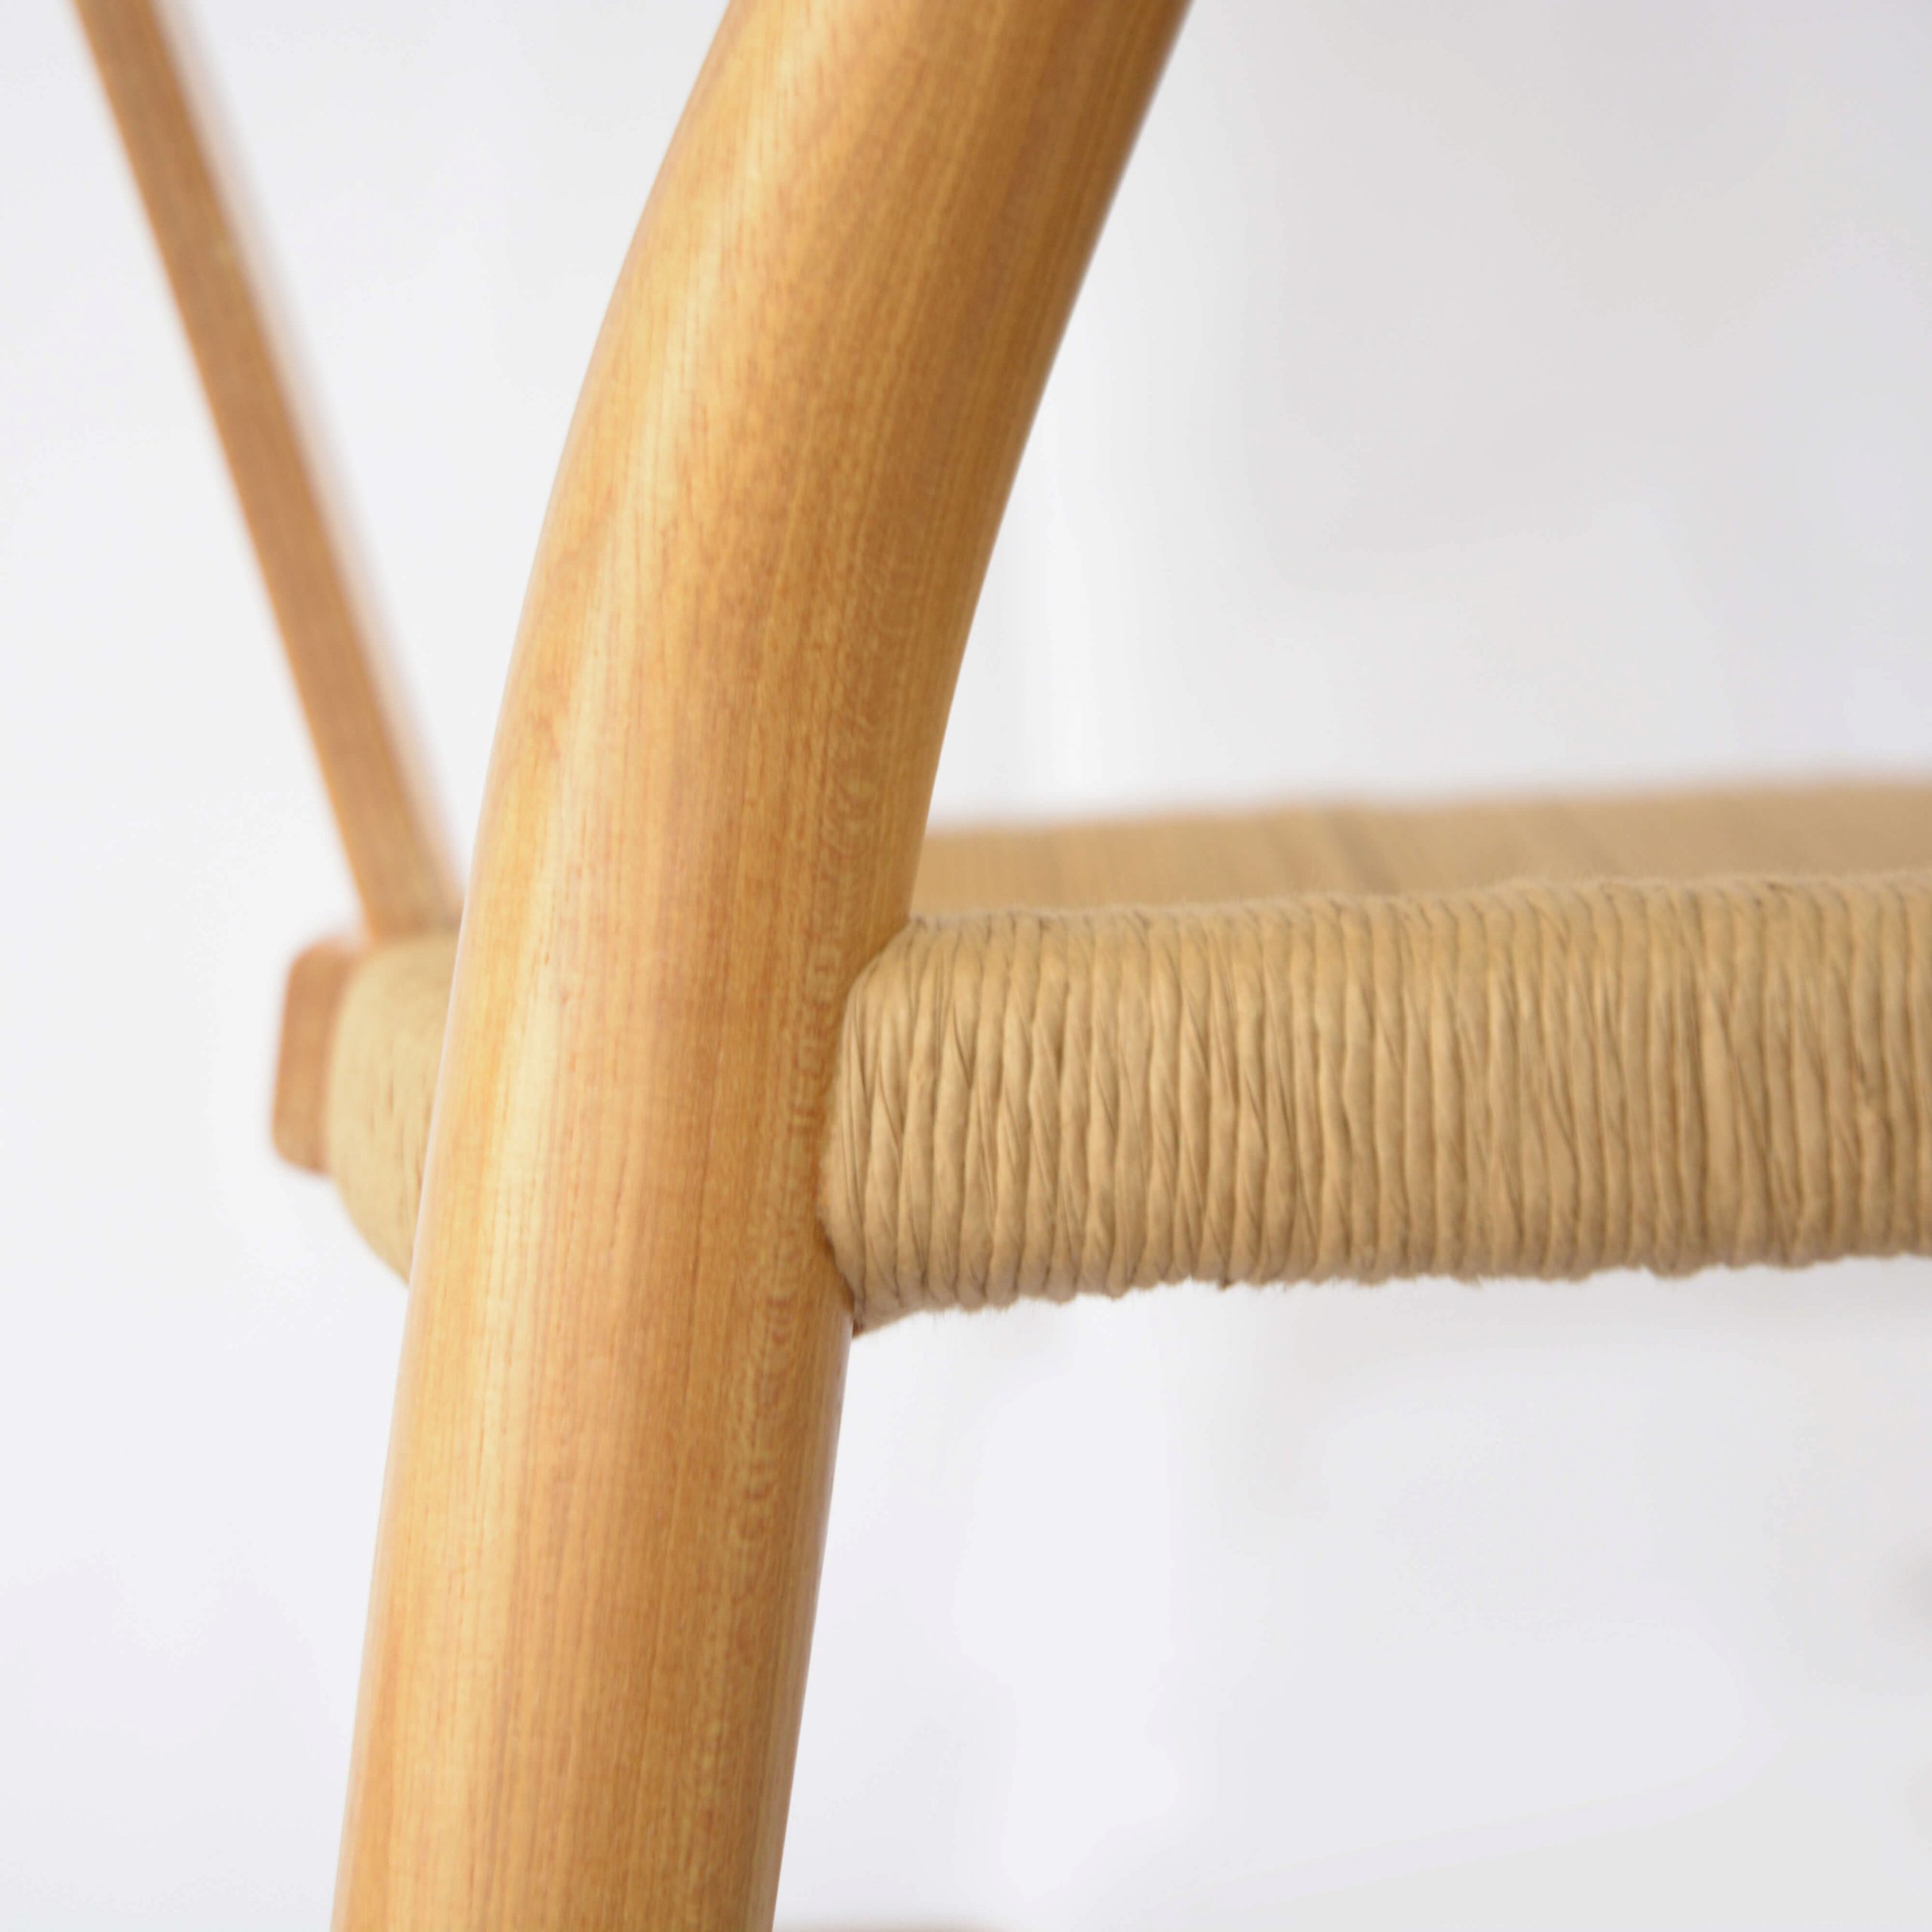 Cadeira Wishbone Natural Detalhe Madeira Natural Tauari e Fibra de Celulose